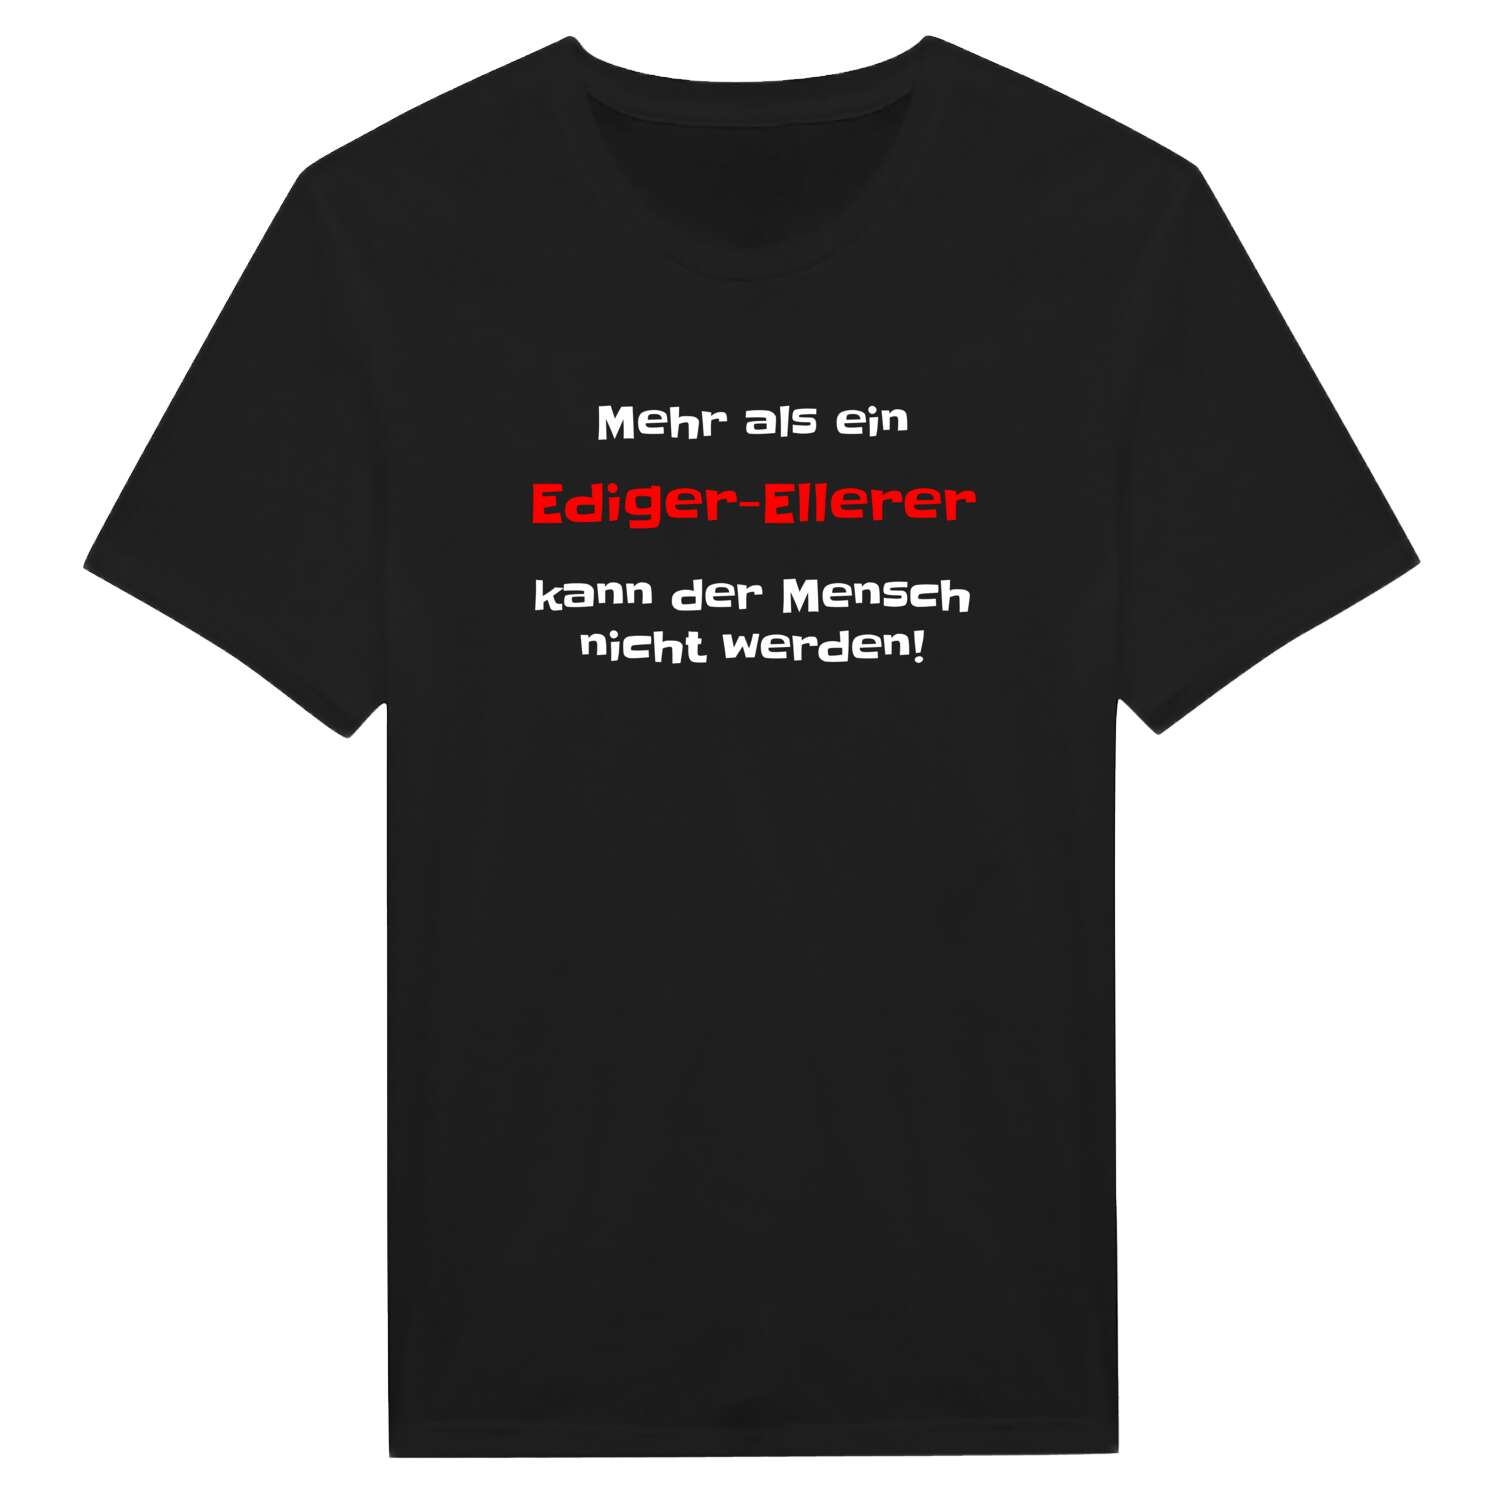 Ediger-Eller T-Shirt »Mehr als ein«